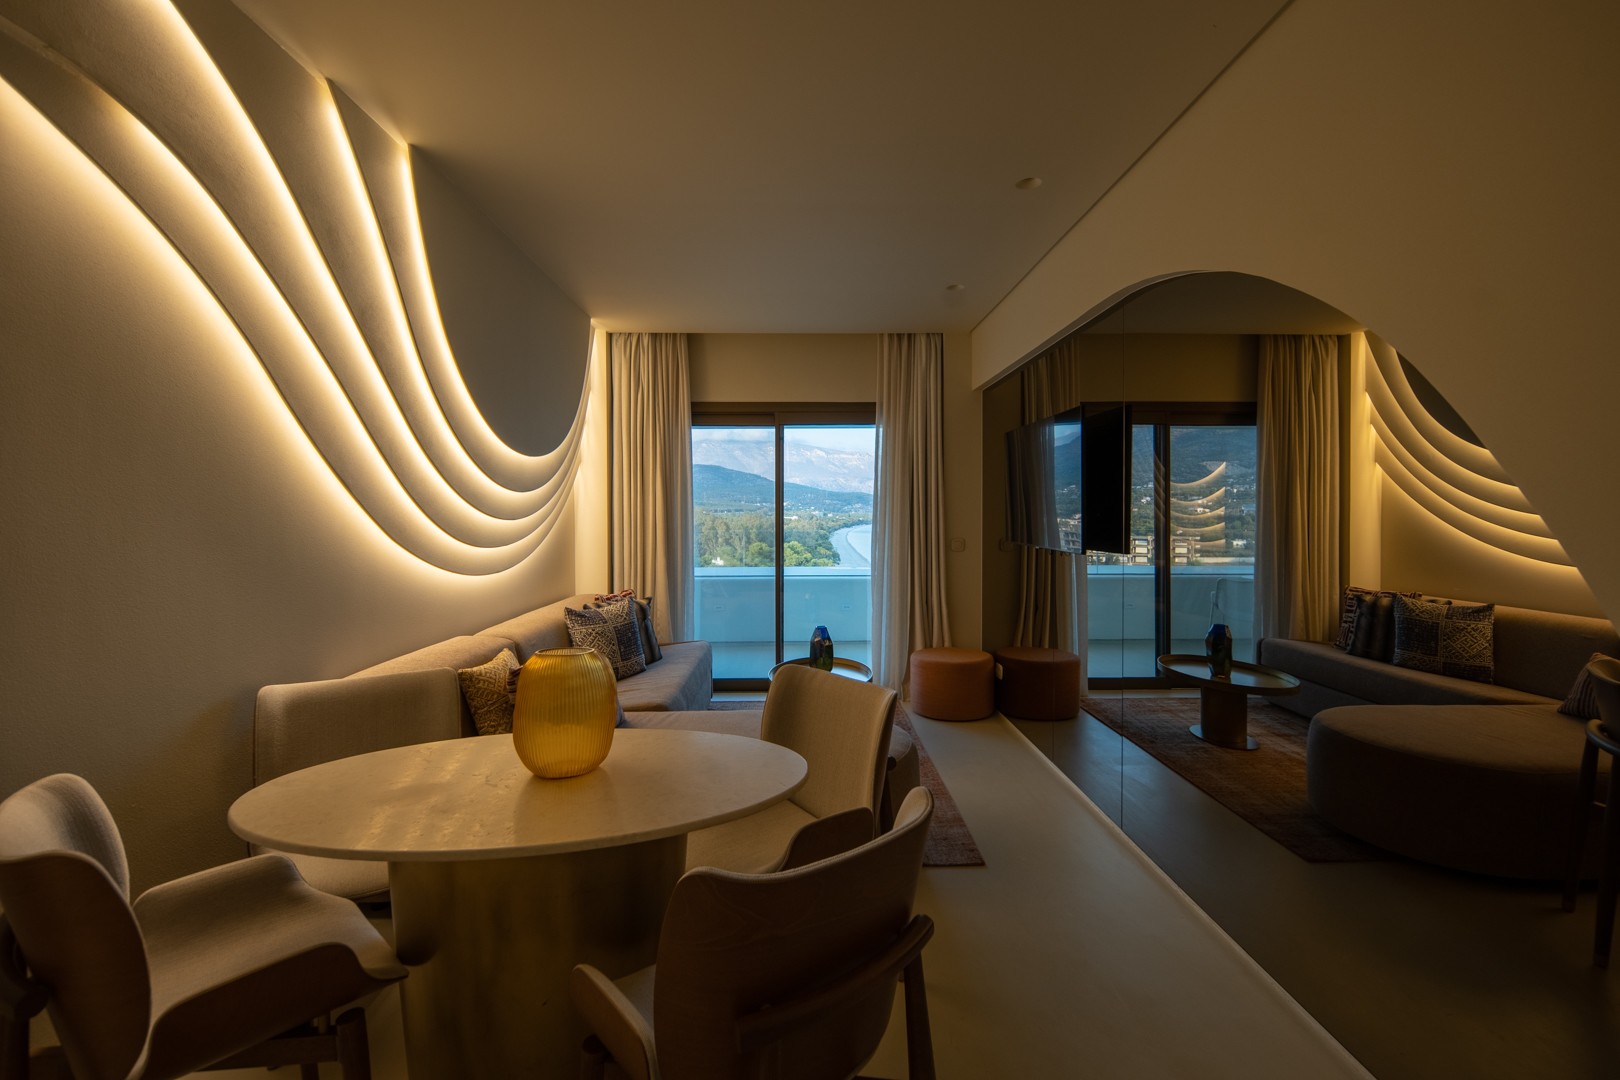 Η ιστορία πίσω από το νέο ελληνικό ξενοδοχείο που πήρε διεθνές χρυσό βραβείο αρχιτεκτονικής